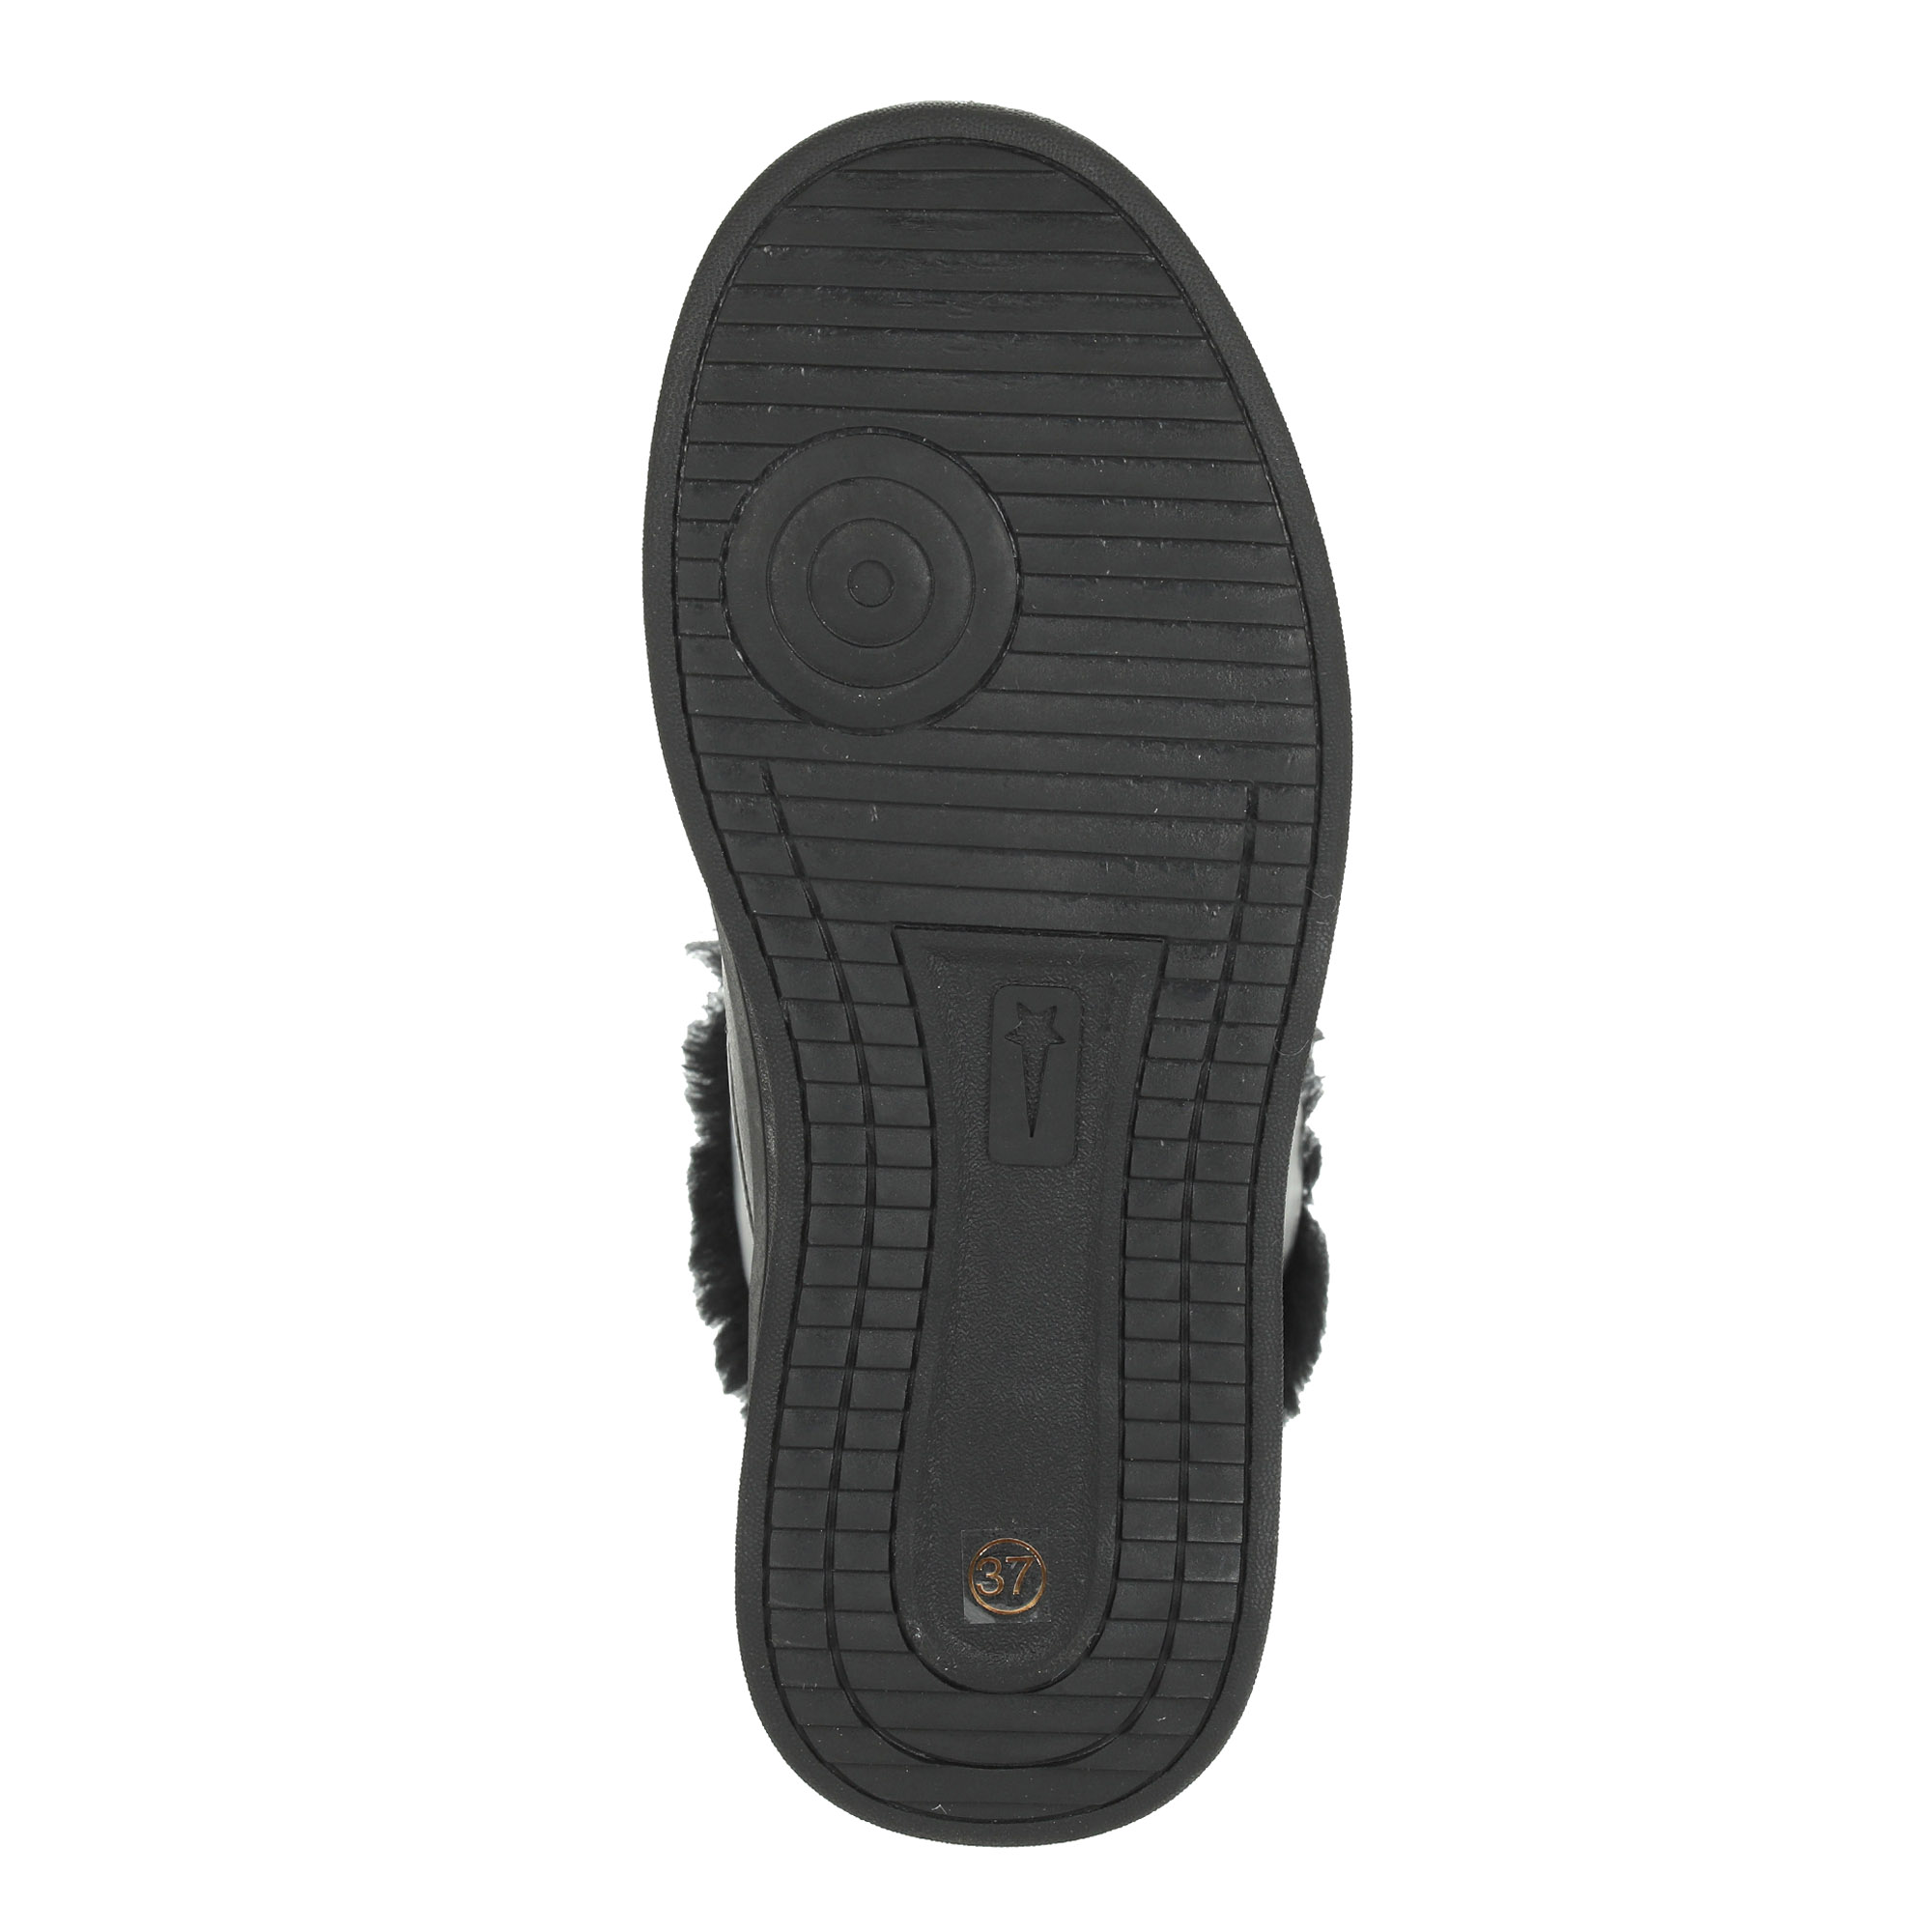 Черные высокие кроссовки из комбинированных материалов смеховой опушкой на подкладке из натуральной шерсти на утолщенной платформе Respect, размер 36, цвет черный - фото 8